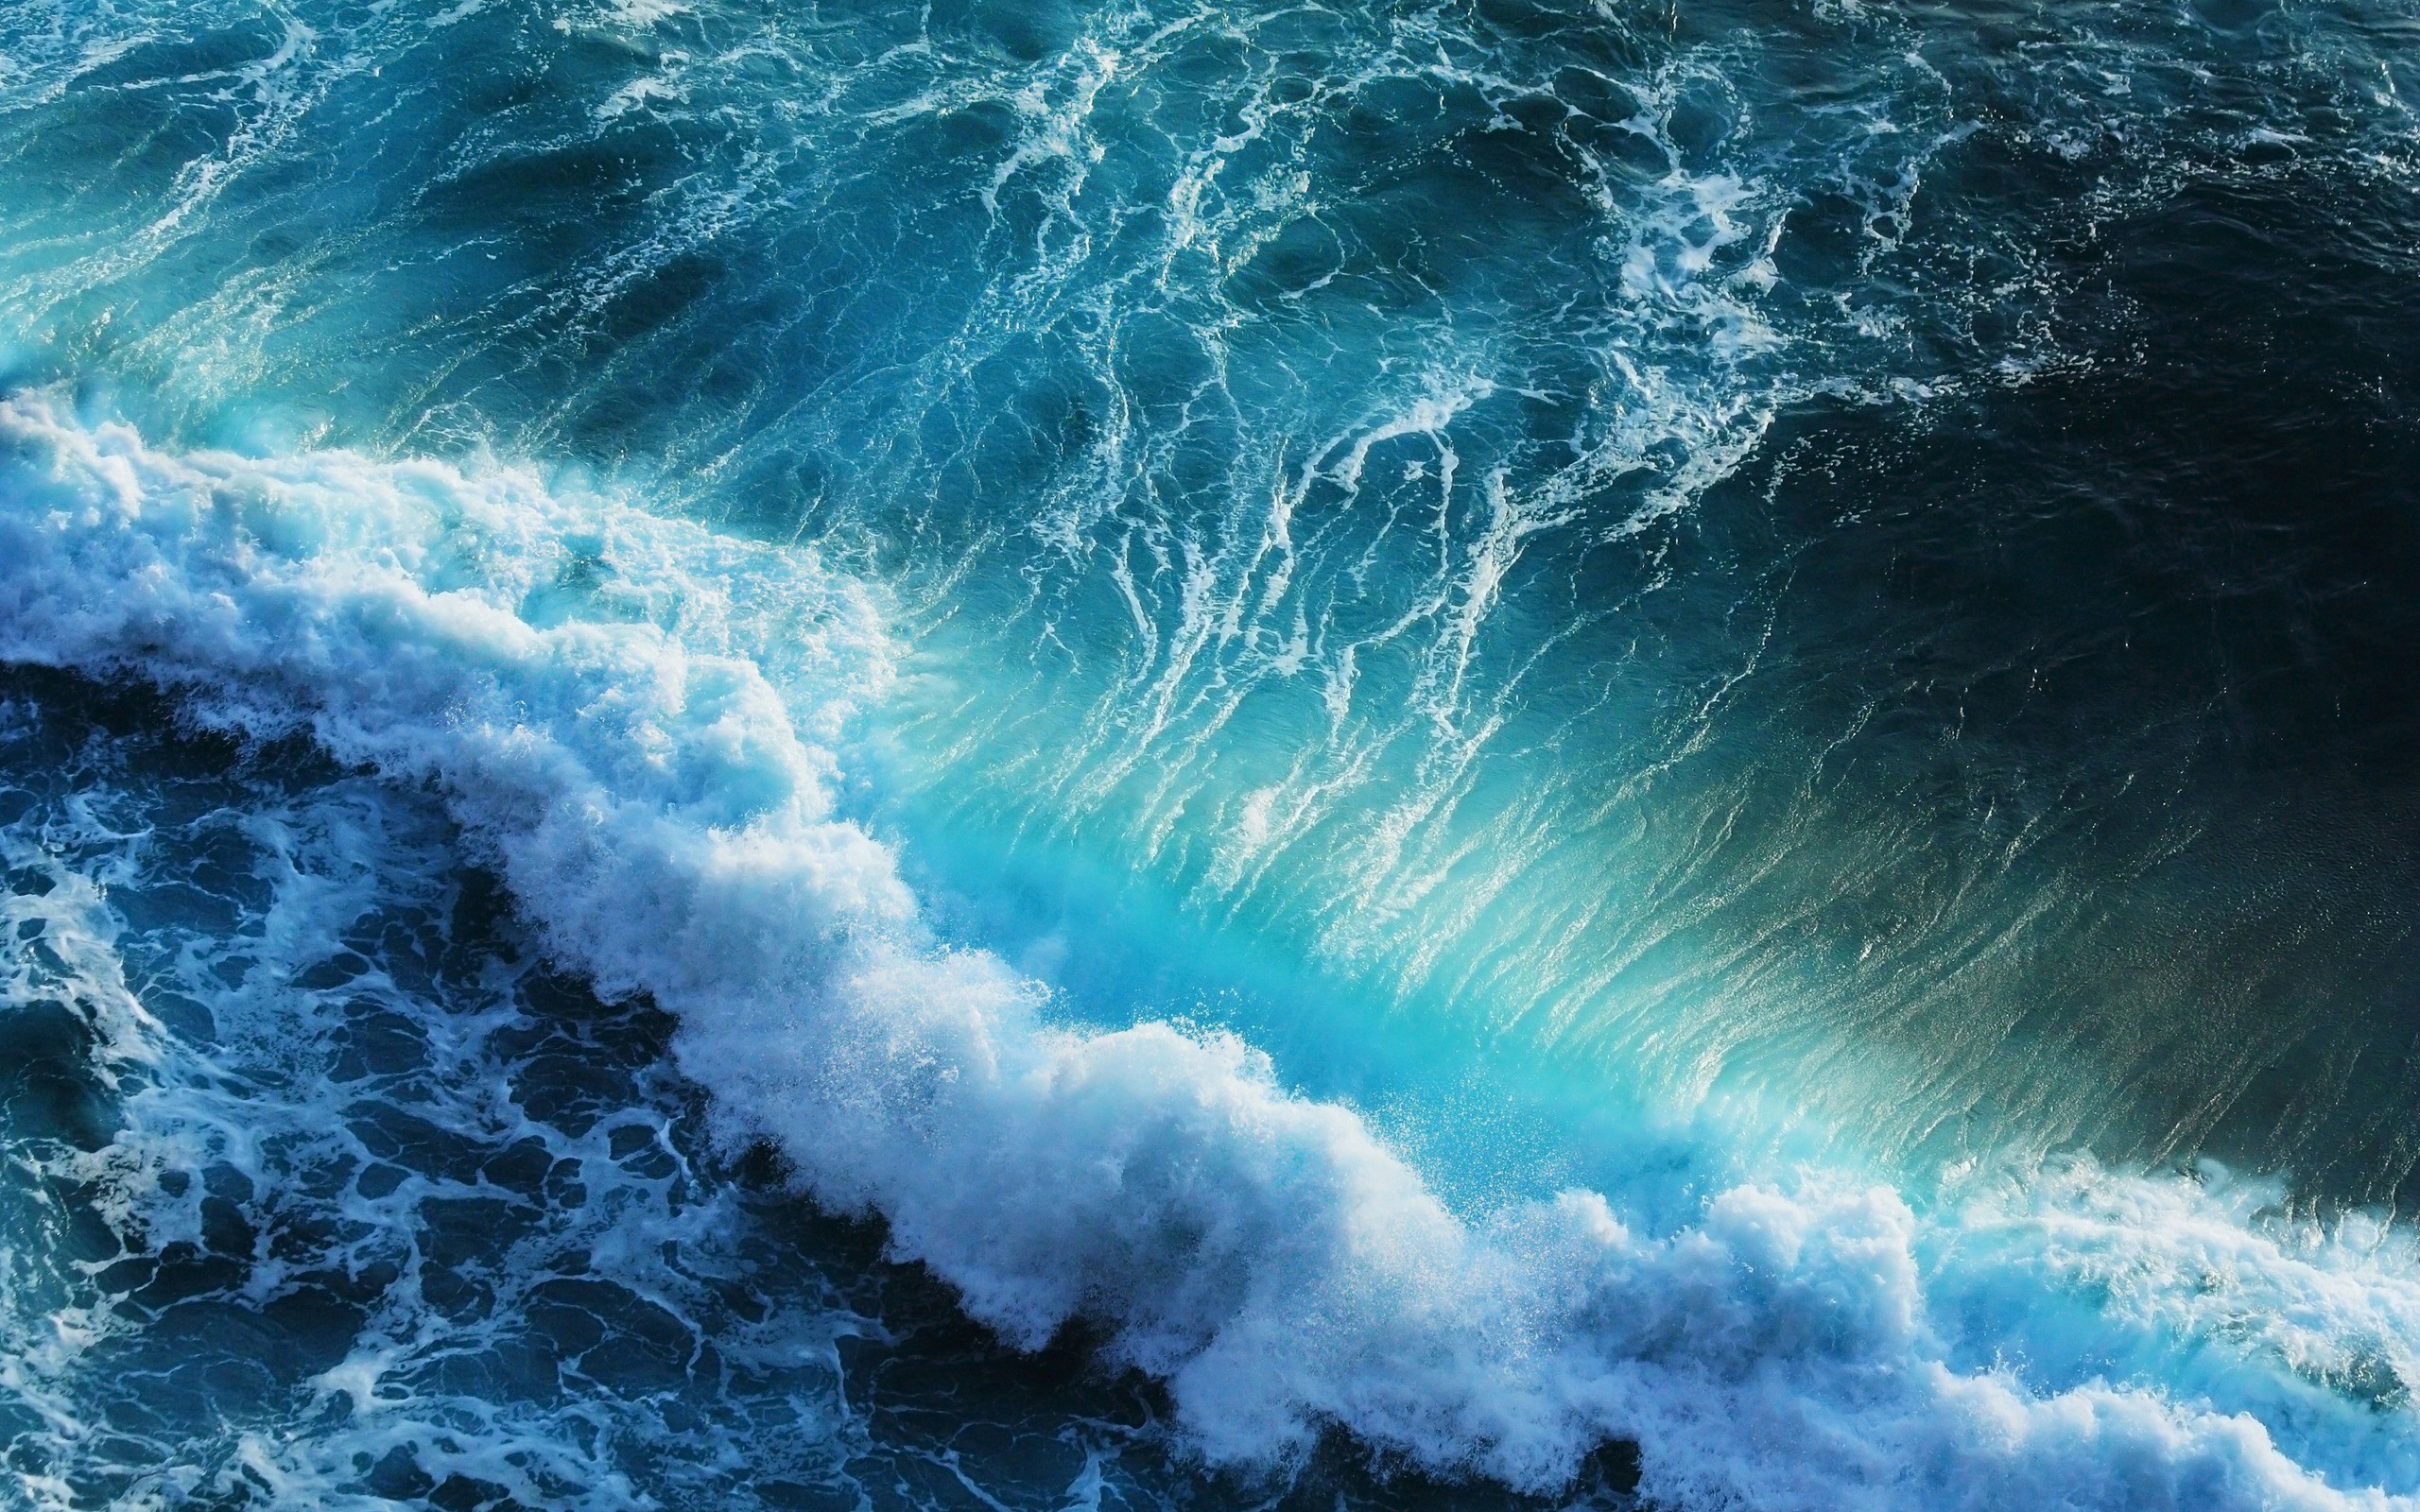 crashing waves wallpaper